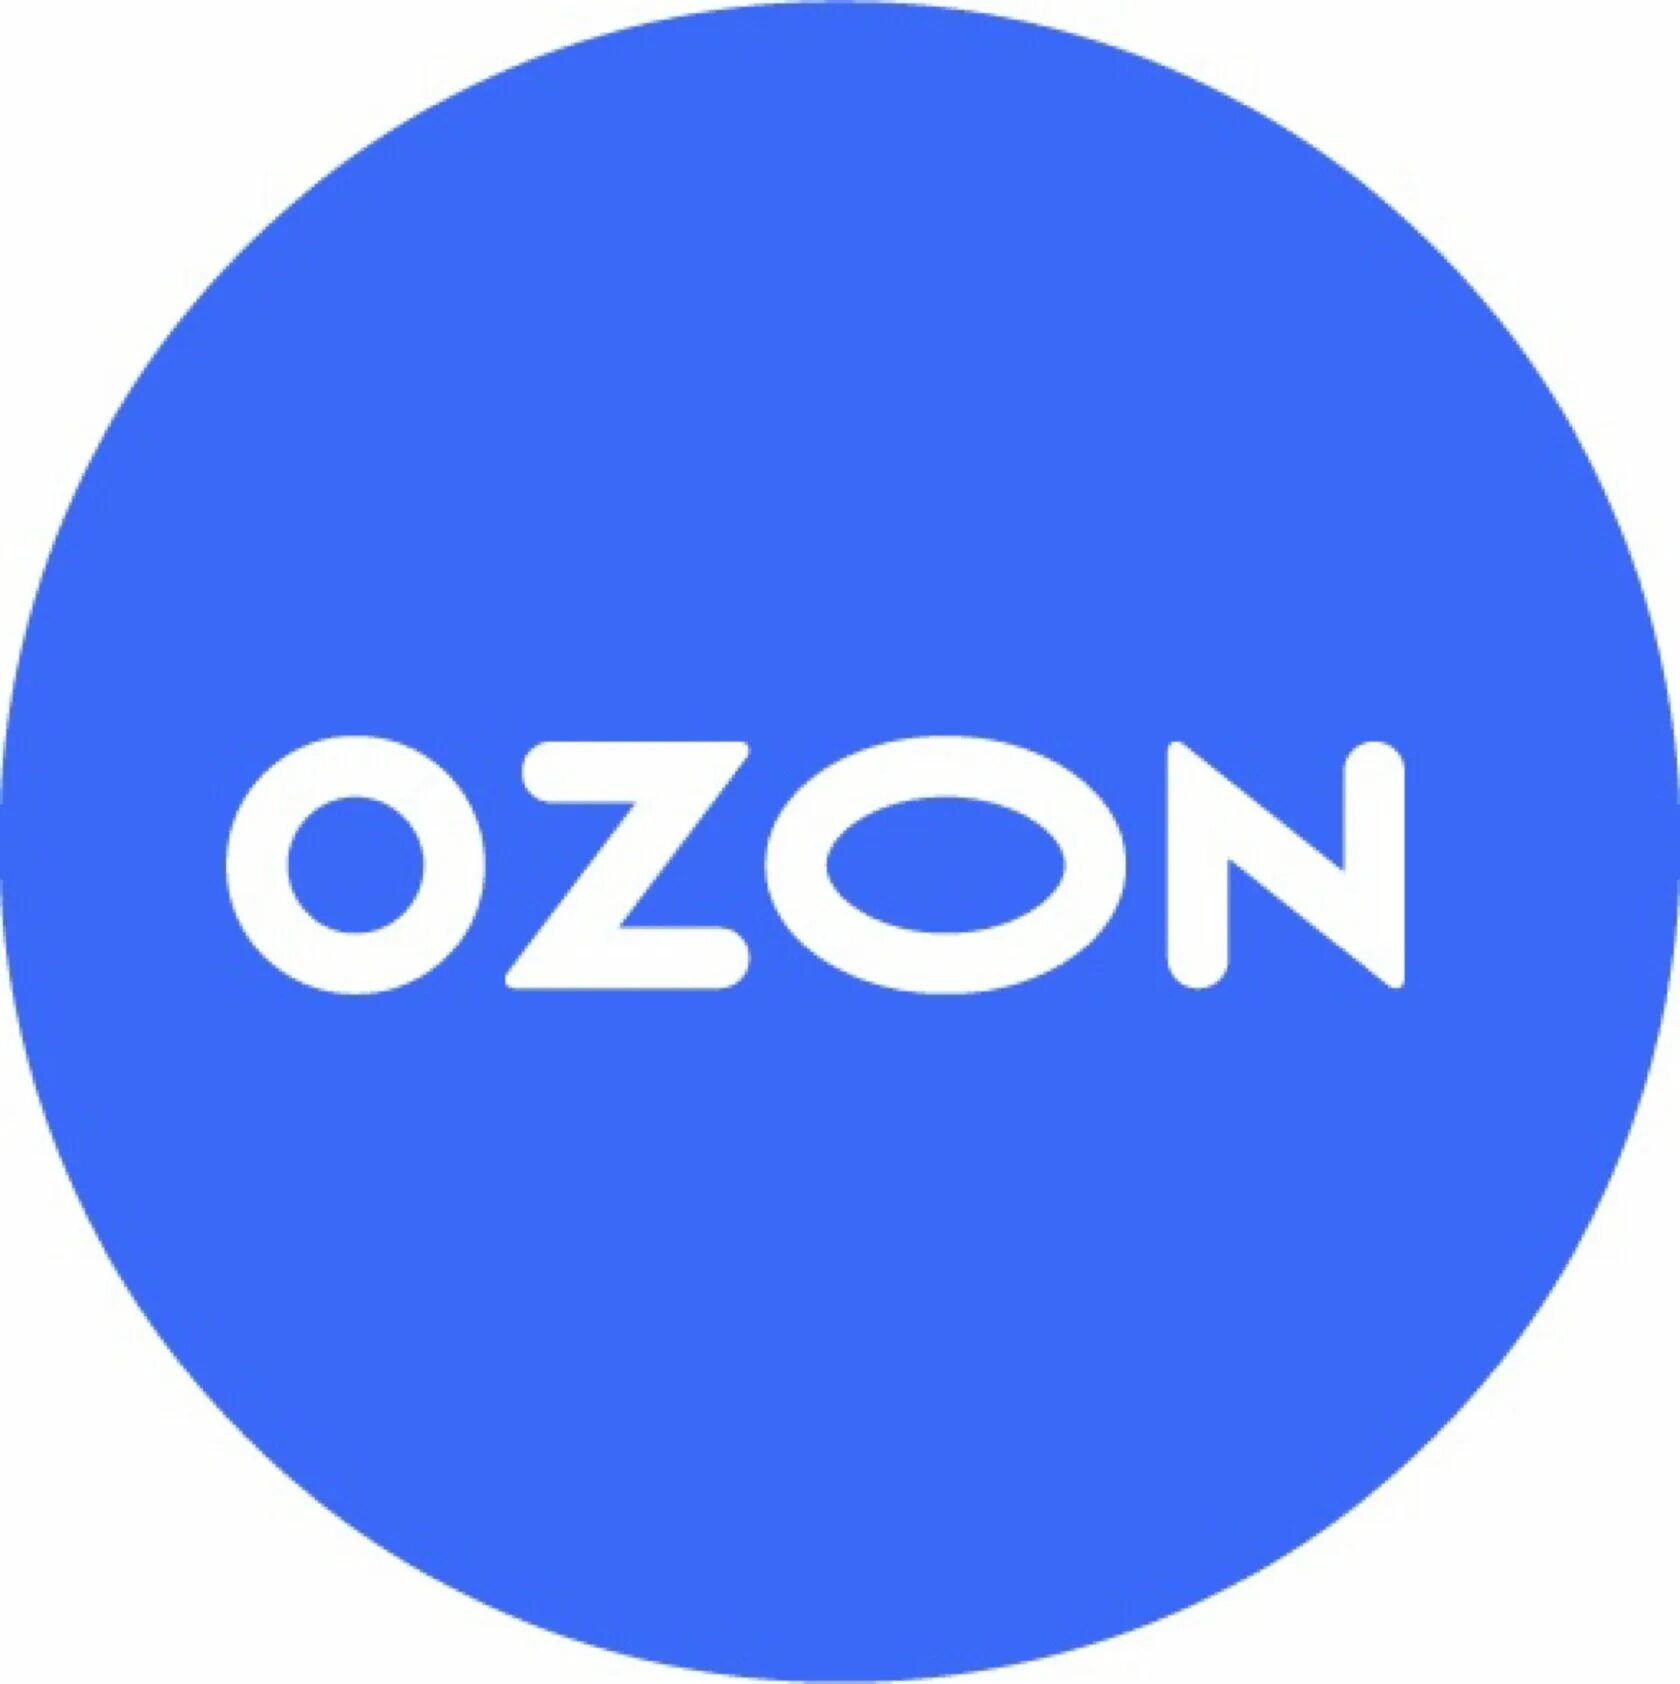 Ozon ru t 22e7lbq. Озон. Озон логотип. Логотип Озон круглый. Осан.